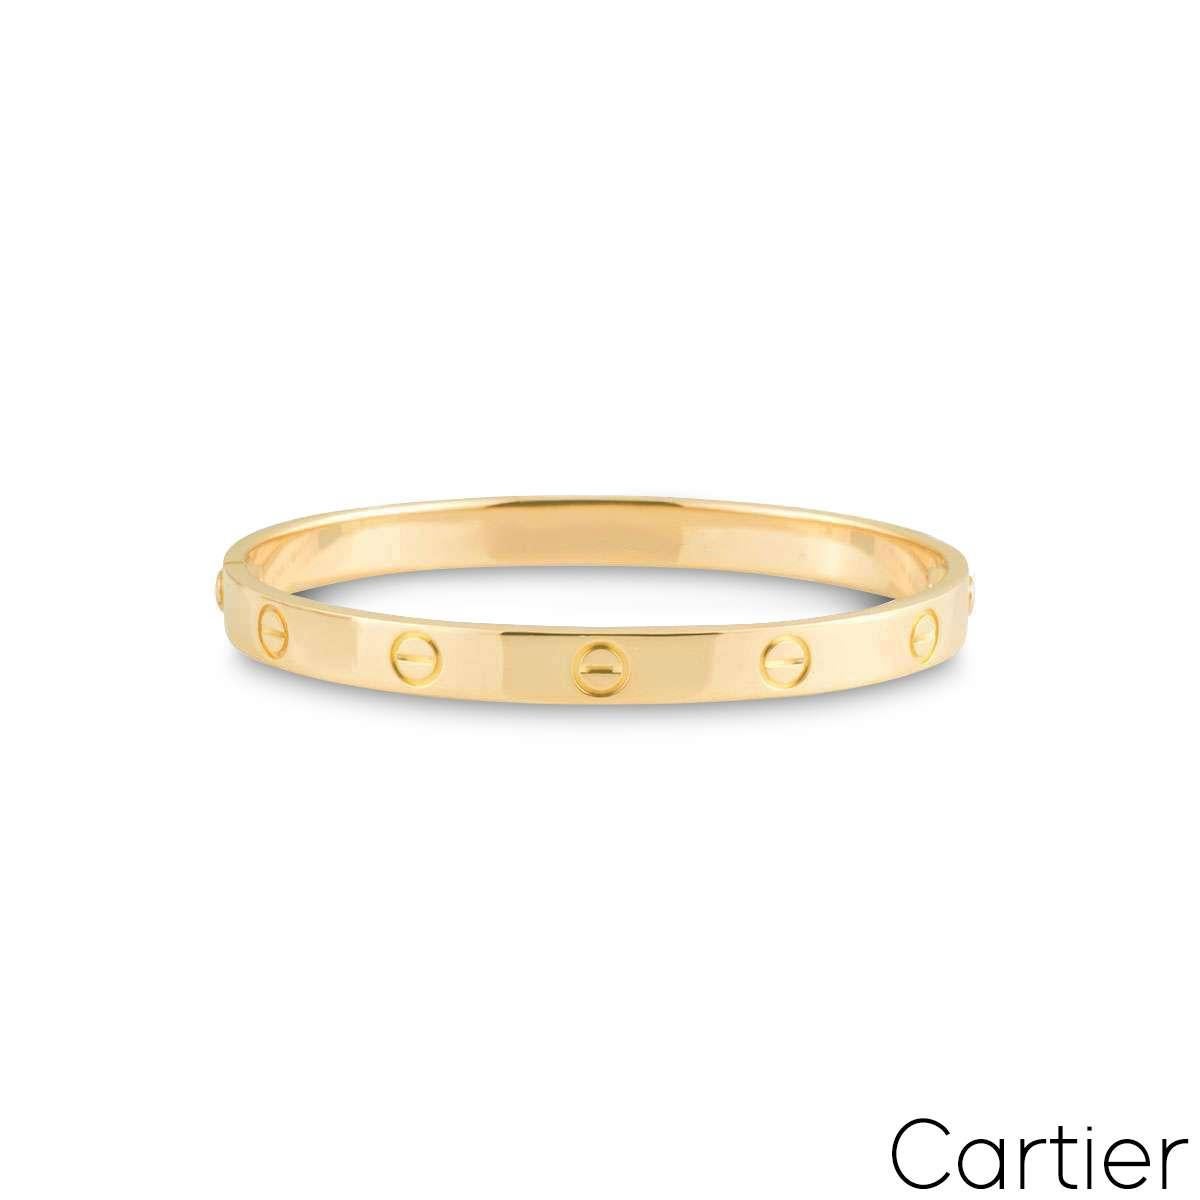 Ein ikonisches Cartier-Armband aus 18 Karat Gelbgold aus der Collection'S Love. Dieses Armband mit dem für Cartier charakteristischen Schraubenmotiv ist mit einer neuartigen Verschraubung ausgestattet. Das Armband wiegt 34,9 Gramm und hat die Größe